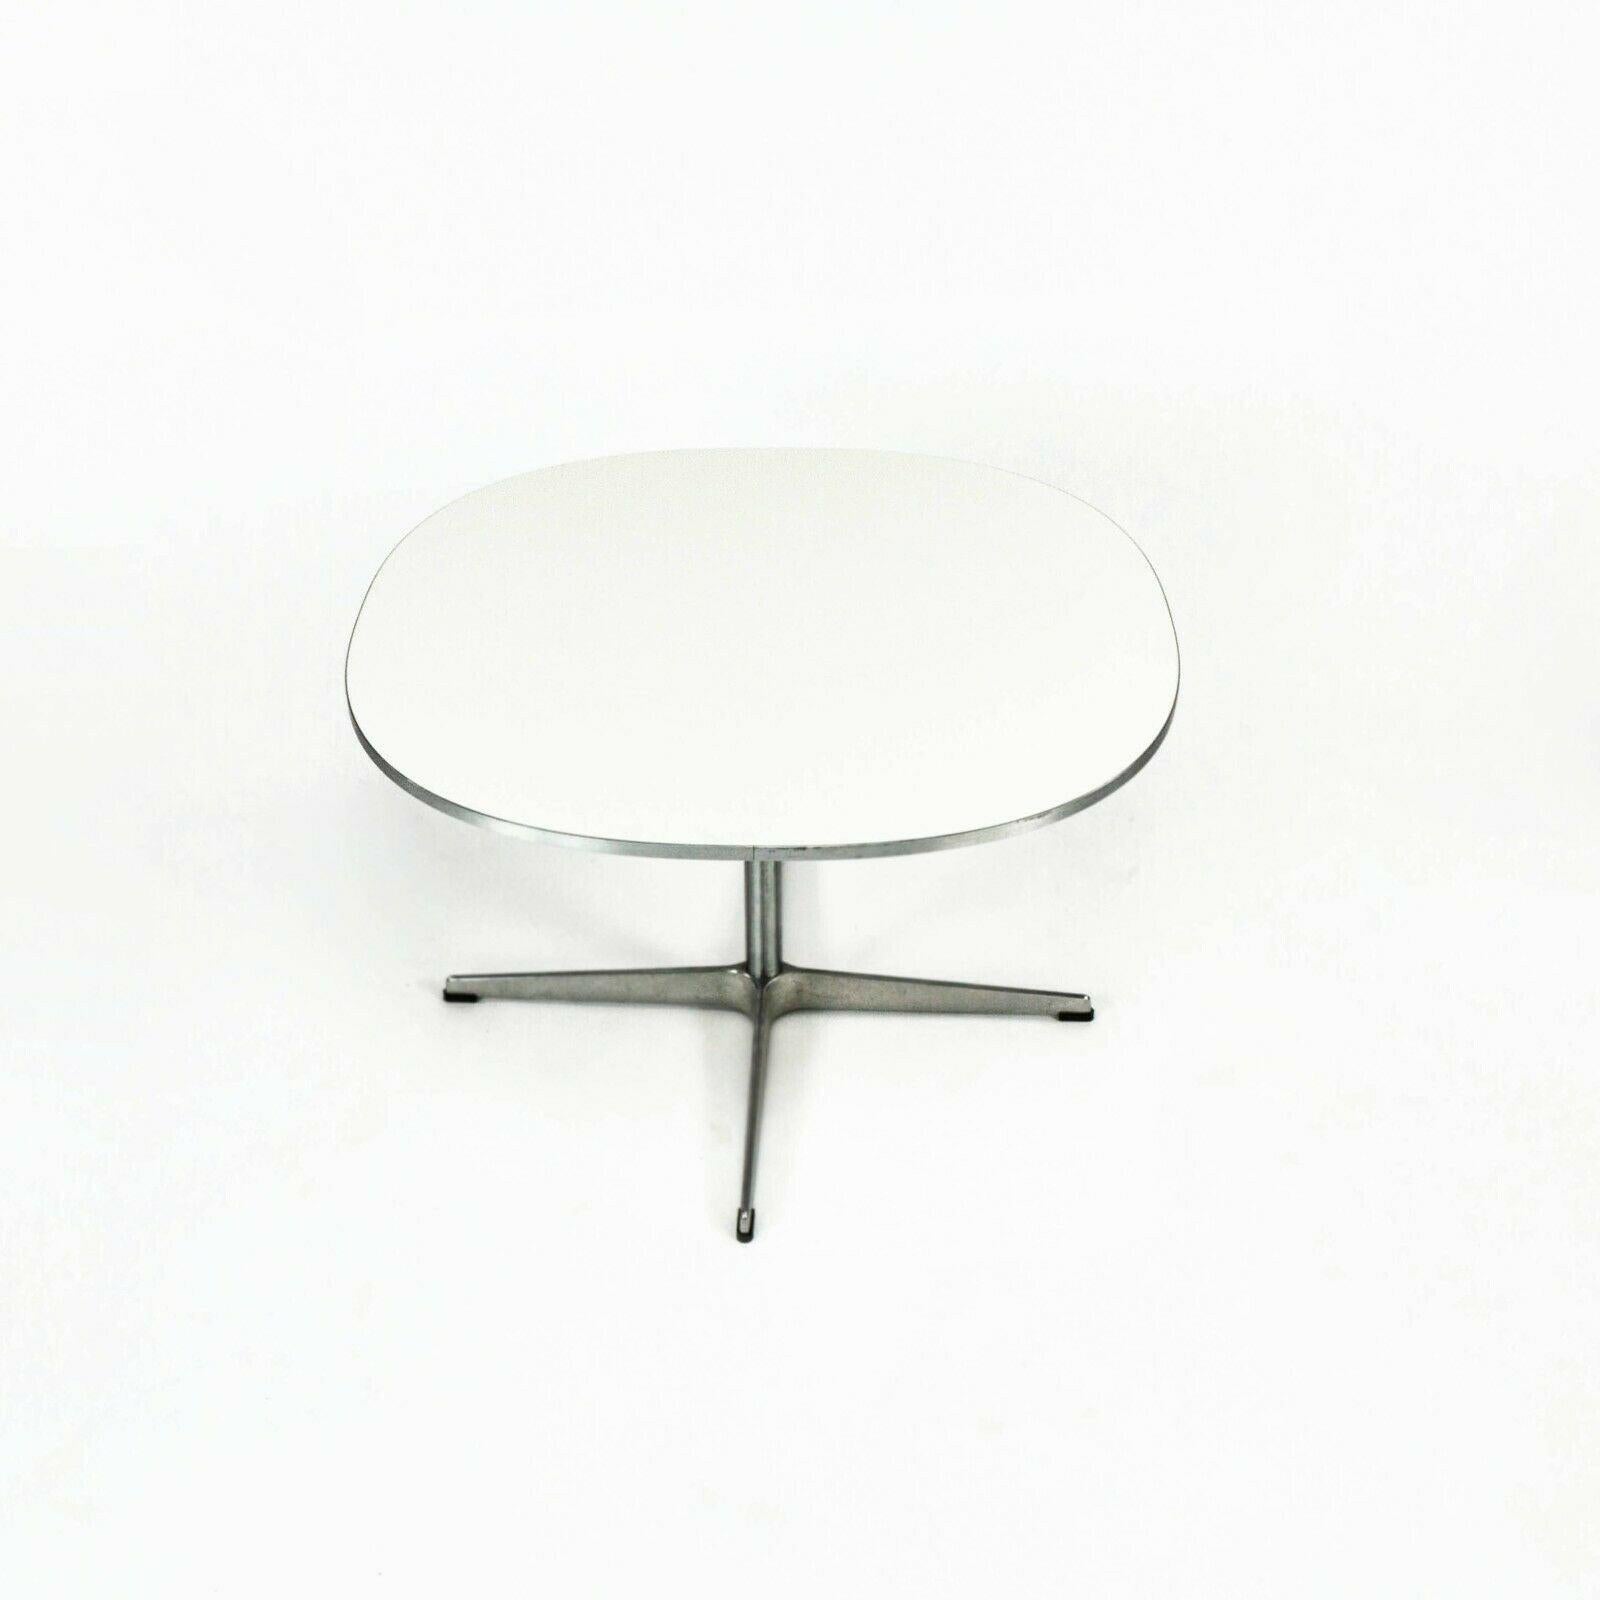 2004 Superellipse Coffee Table by Piet Hein / Bruno Mathsson / Arne Jacobsen For Sale 1